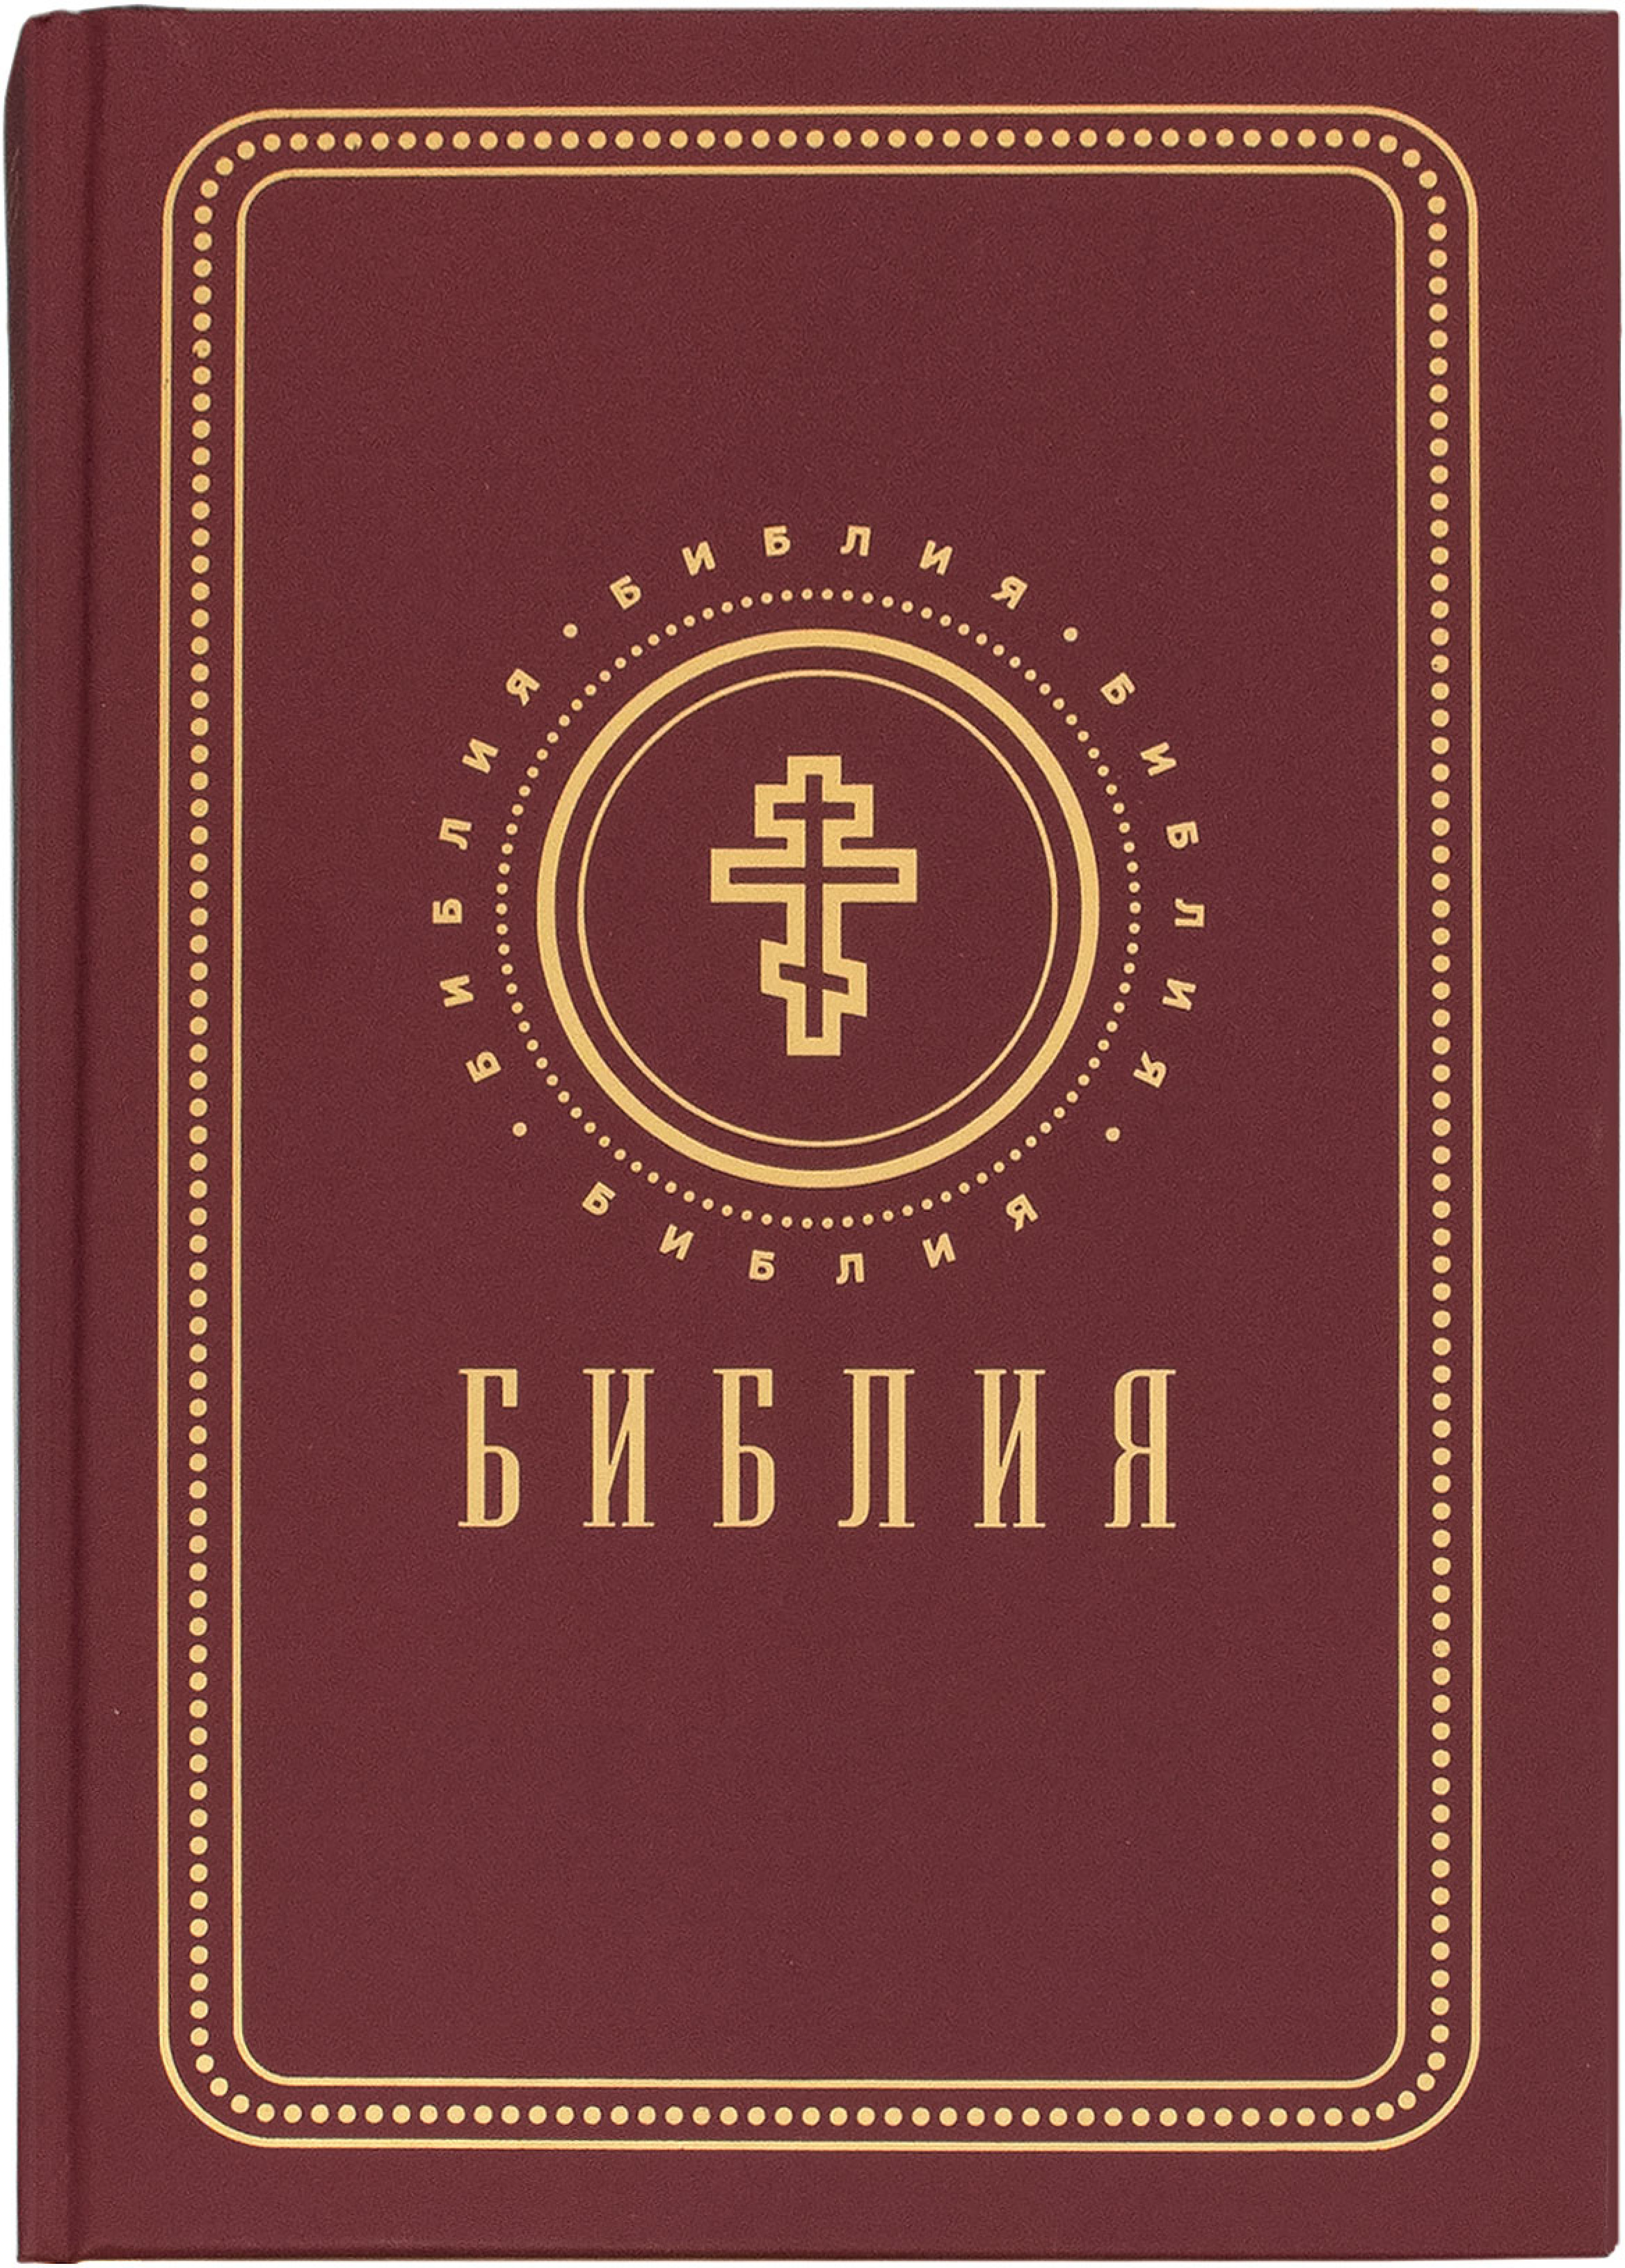 Библия на русском языке с золотым обрезом - фото